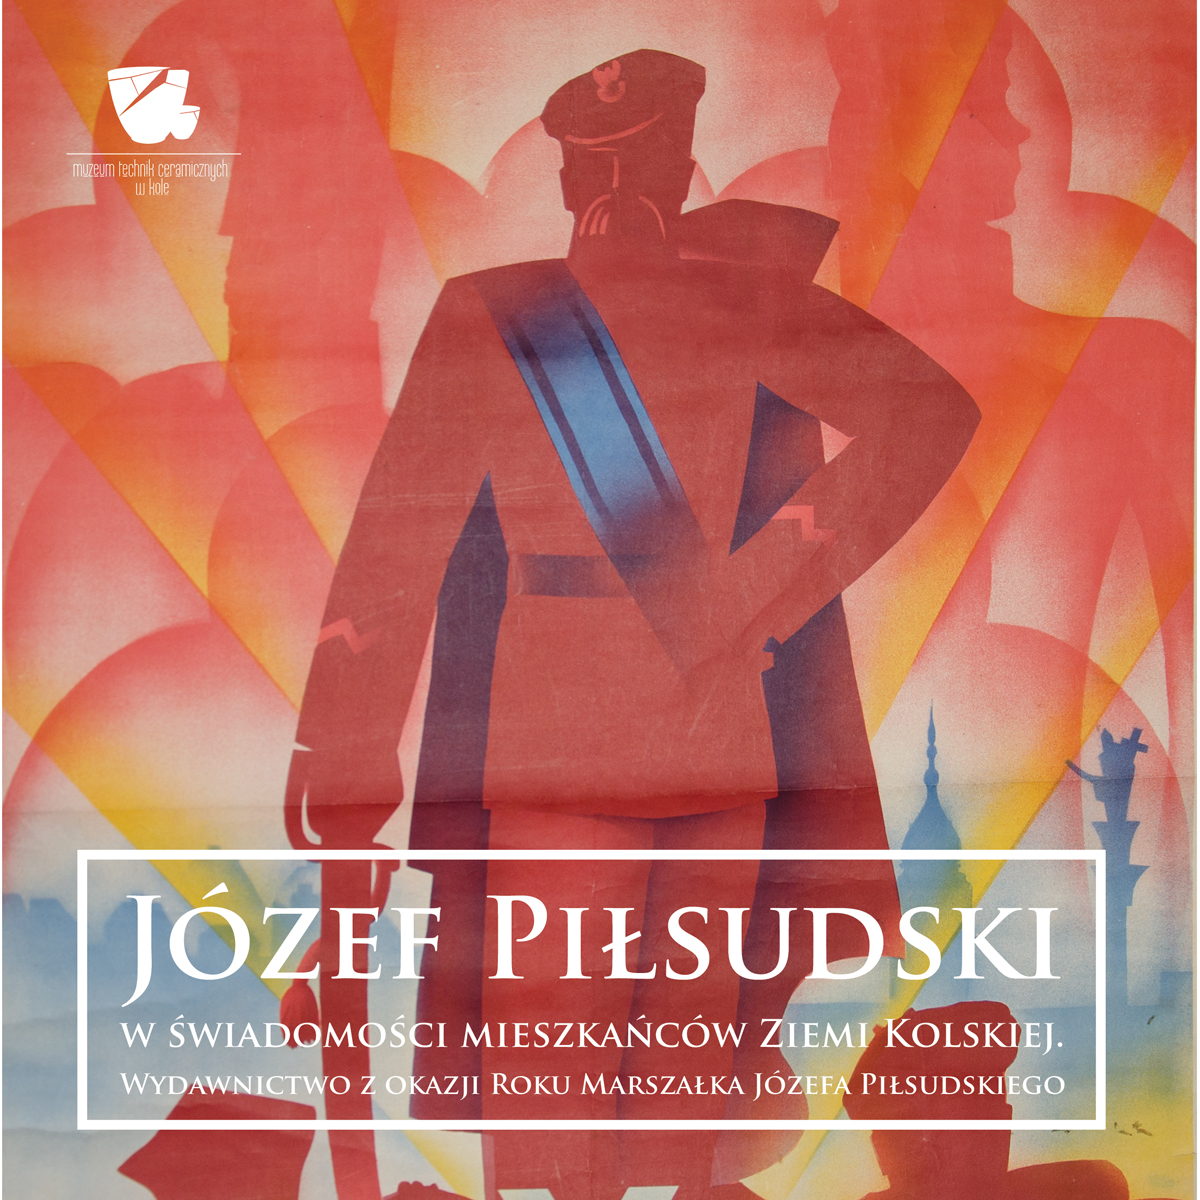 Józef Piłsudski w świadomości mieszkańców Ziemi Kolskiej - wydawnictwo z okazji roku Marszałka Józefa Piłsudskiego 